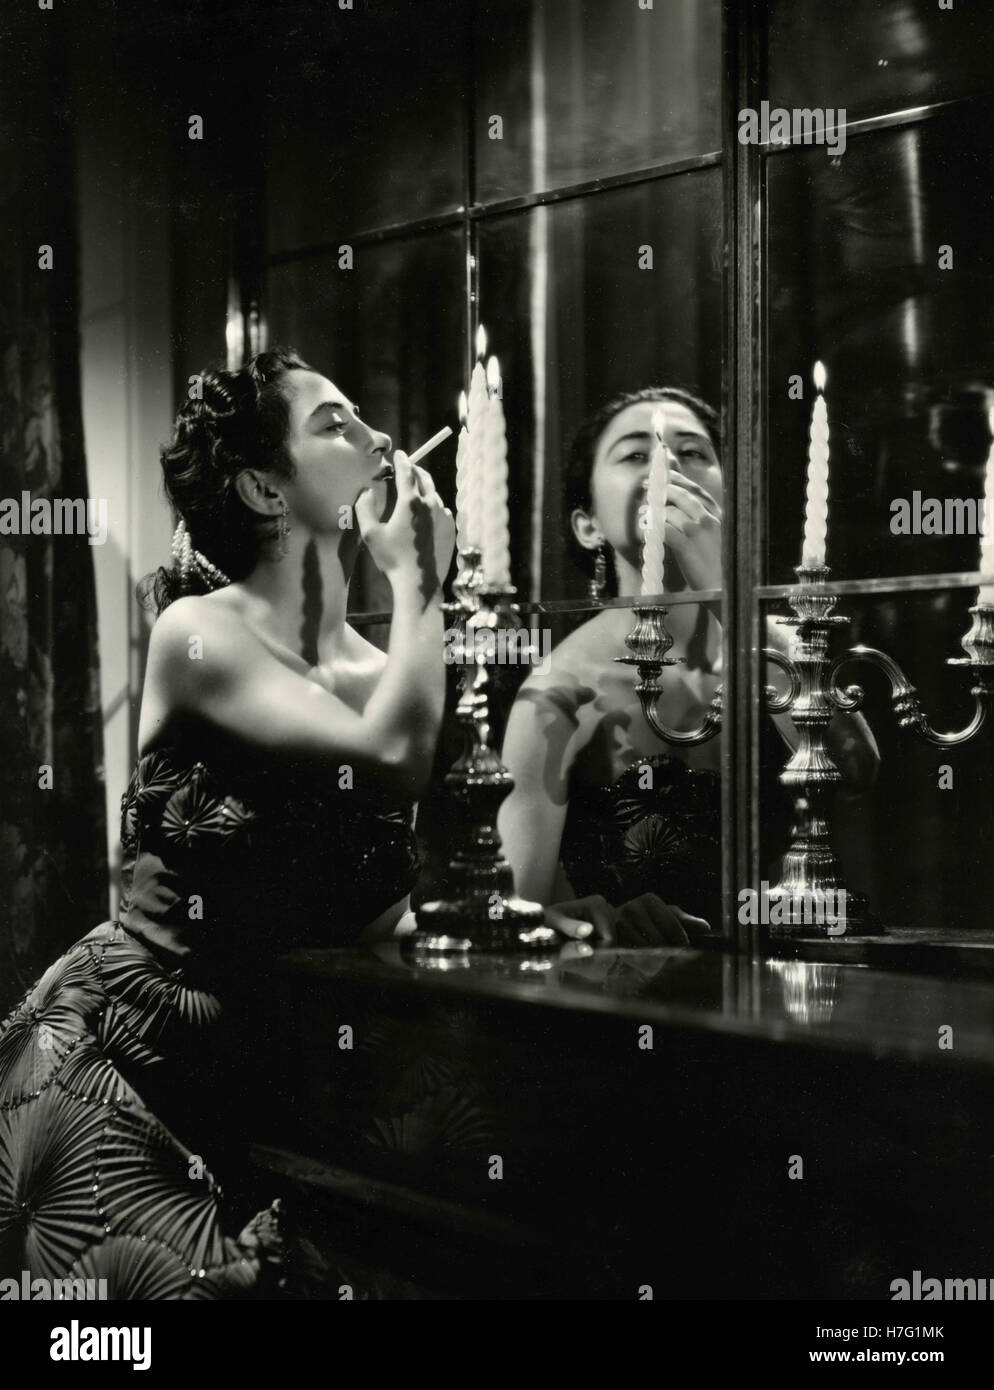 Femme allume une cigarette à partir de la bougie, Italie Banque D'Images